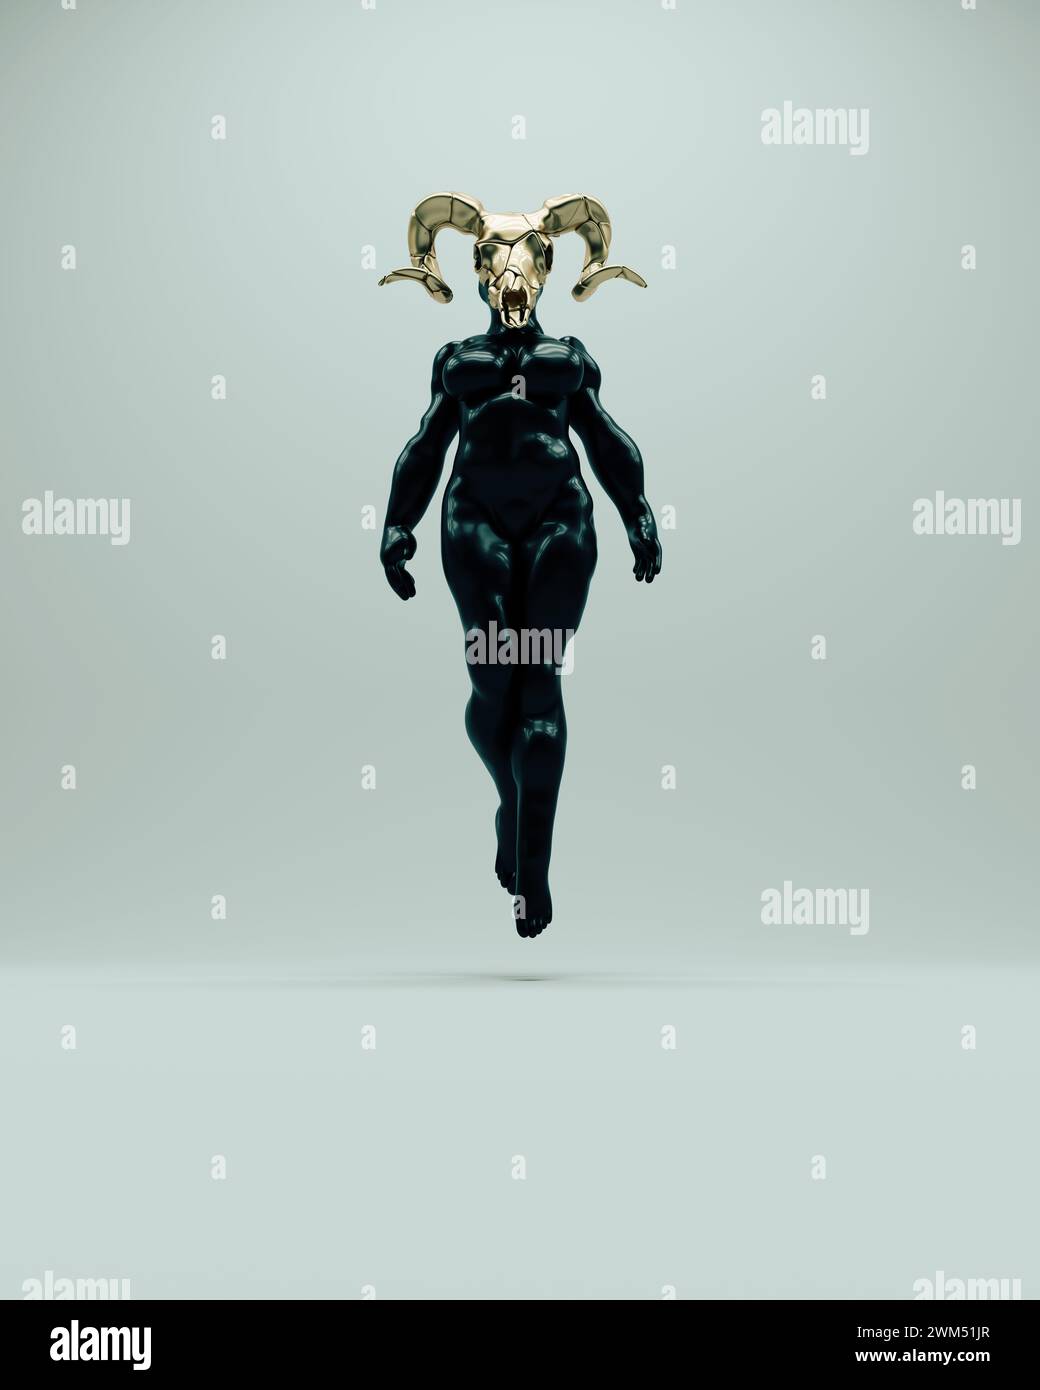 Teschio di RAM in oro nero femminile scultura voluttuosa astratta misteriosa posa del corpo di figure paranormali illustrazione 3d rendering digitale Foto Stock